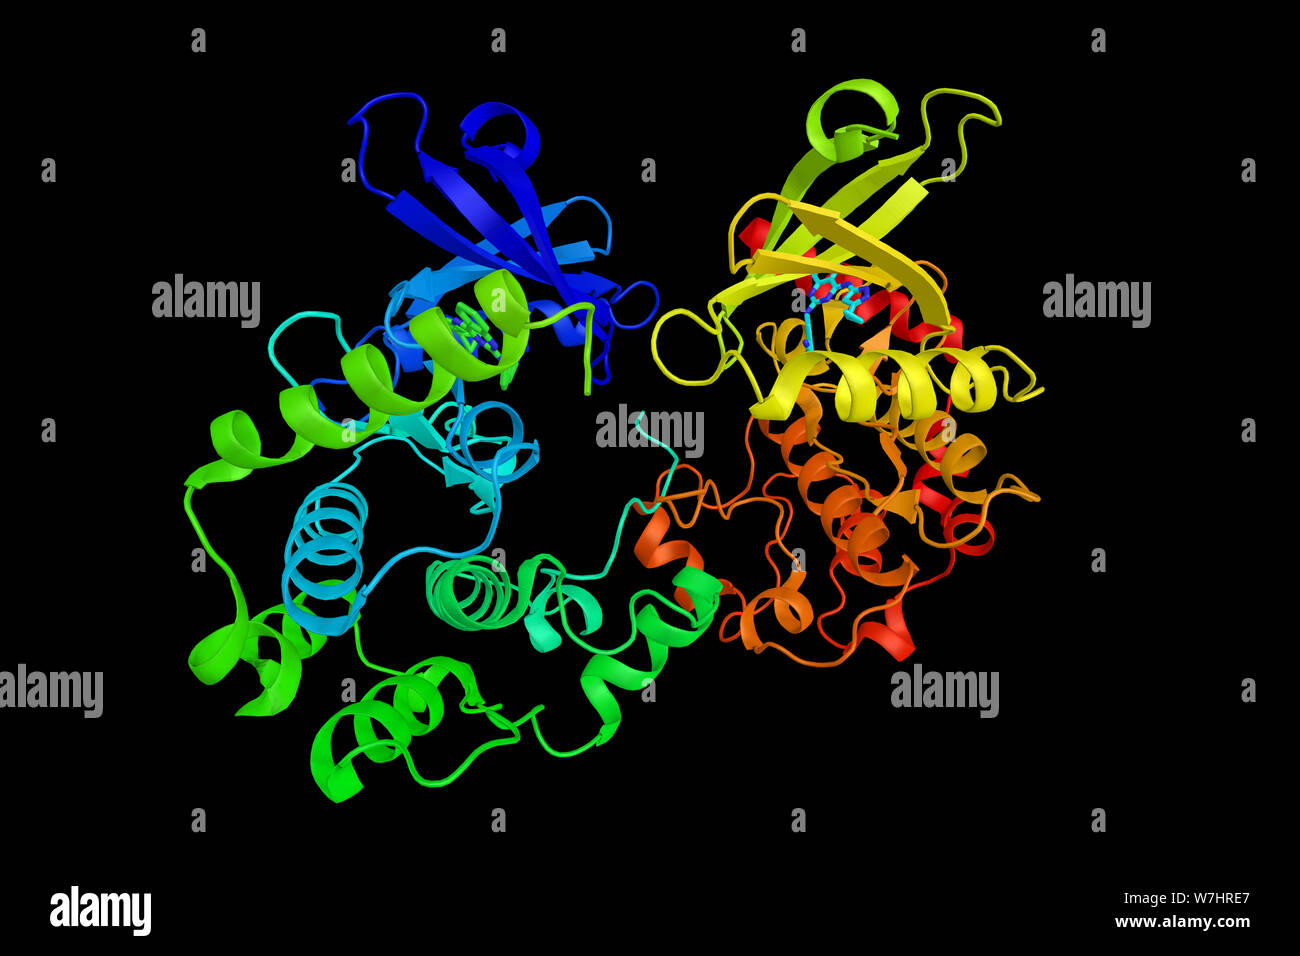 Serin/Threonin Protein kinase MST 4, ein Protein, das zum Golgi-apparat lokalisiert und ist speziell durch Bindung an die Golgi matrix pr aktiviert Stockfoto